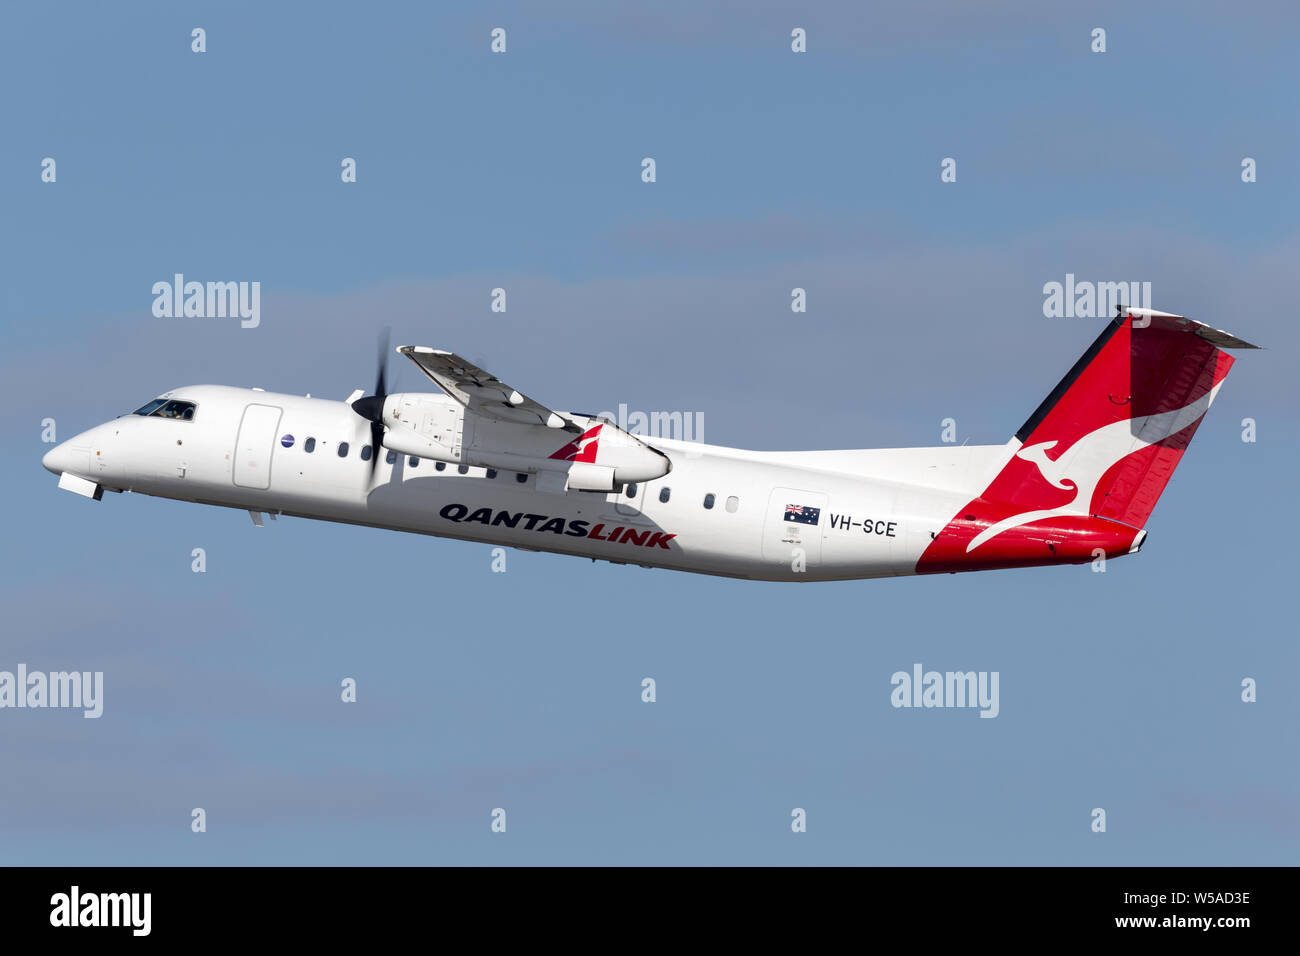 QantasLink (Est de l'Australie Airlines) de Havilland Canada Dash 8 lits 1 turbopropulseurs avion régional avions qui décollent de l'aéroport de Sydney. Banque D'Images